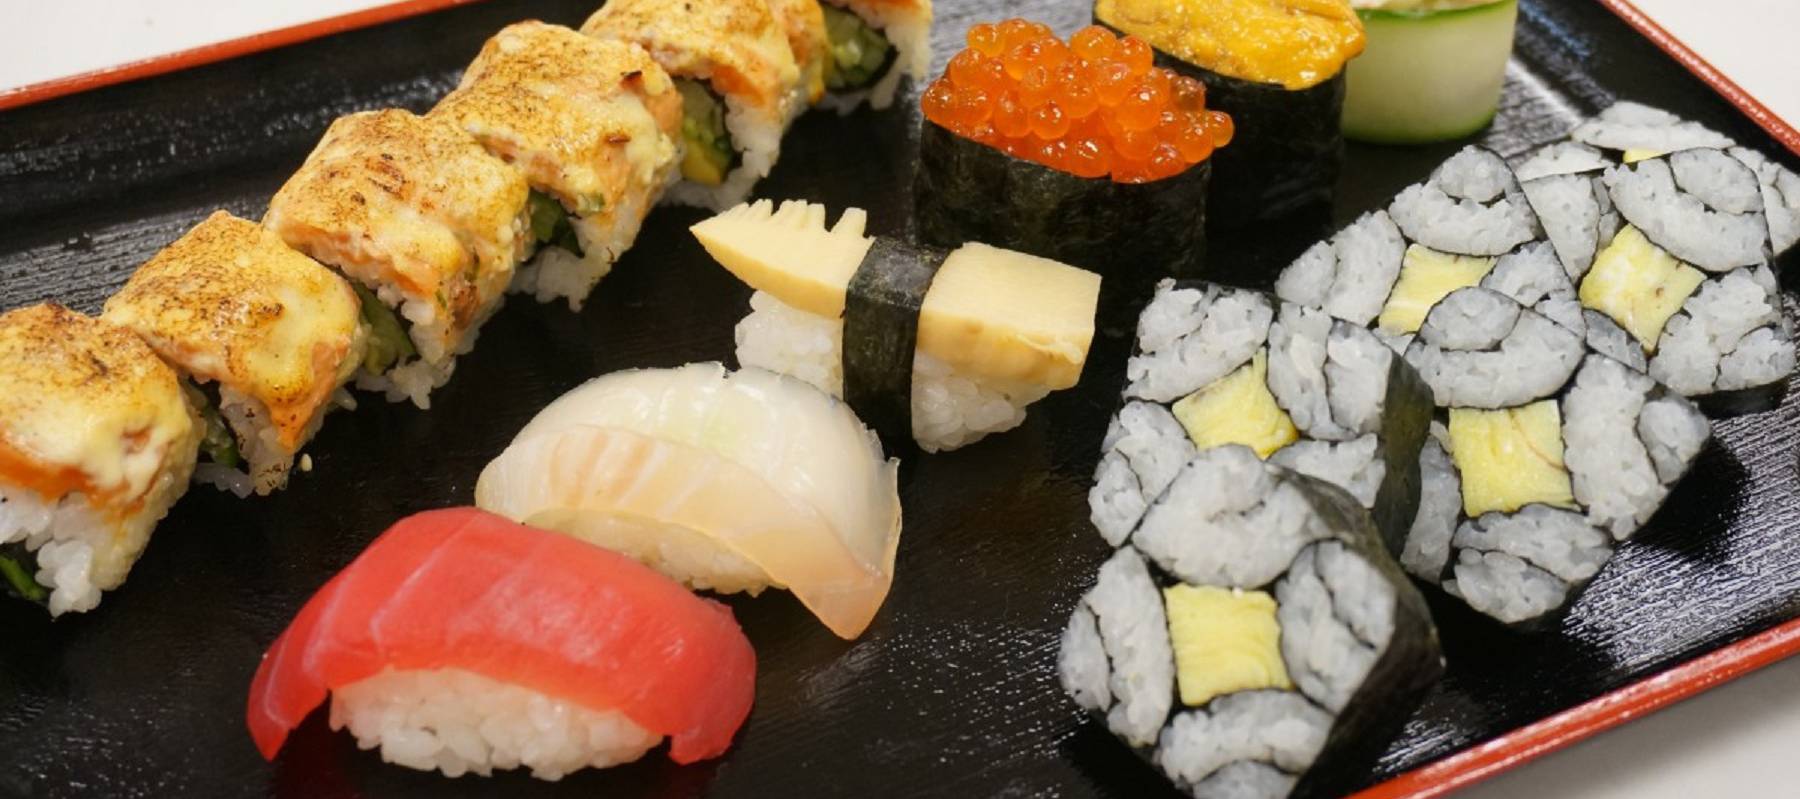 tipos de sushi populares